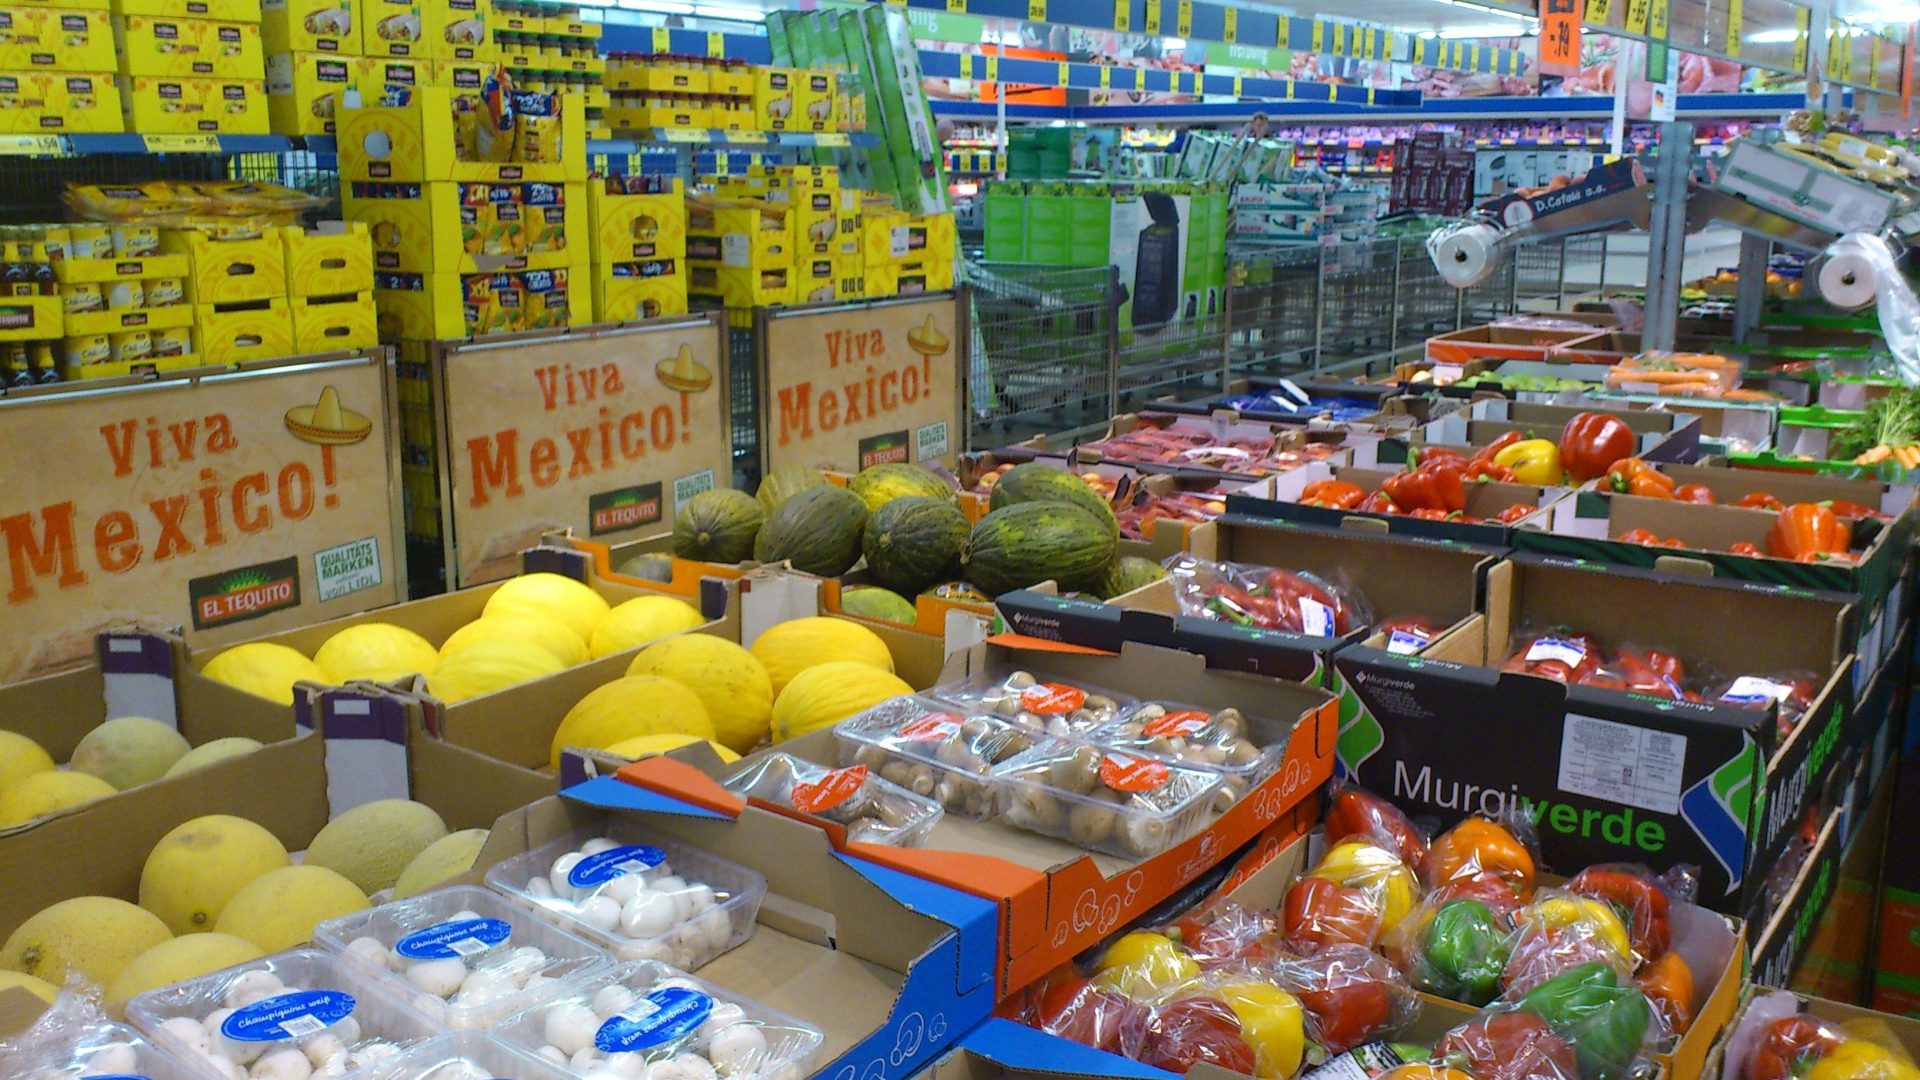 Imagen de un supermercado de distribución alimentaria. EFEAGRO/Concha Rubio.